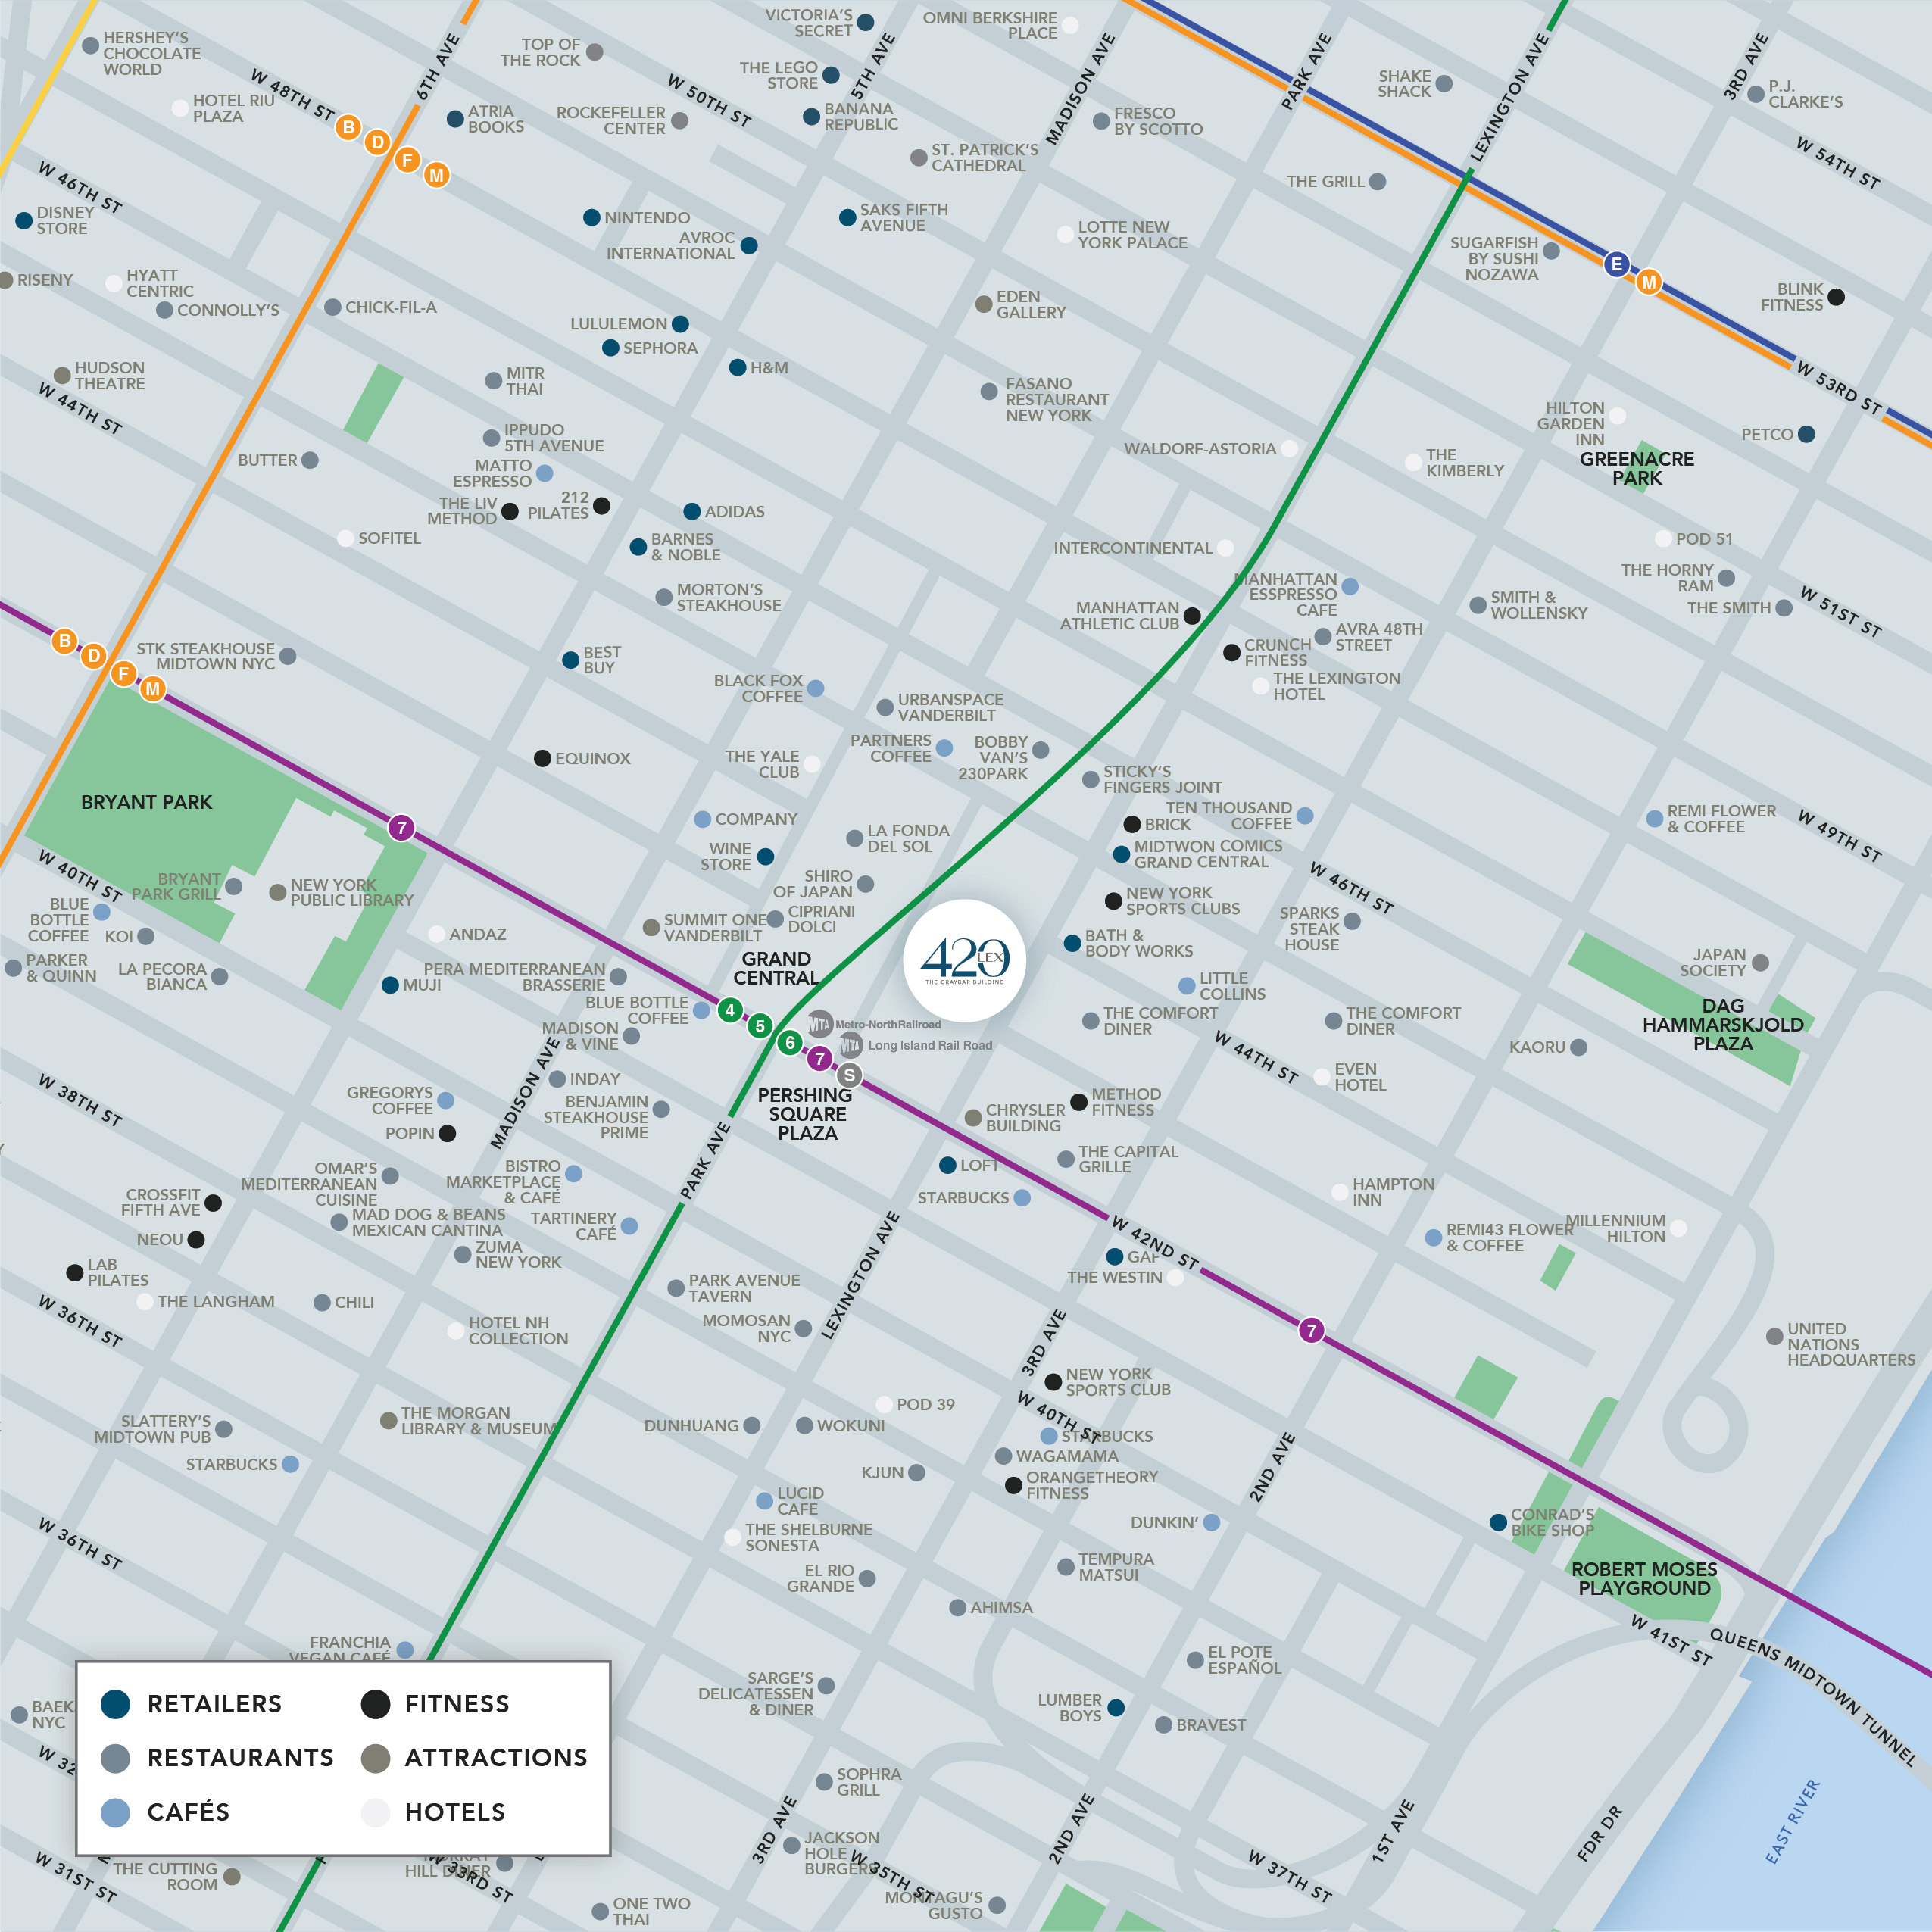 SLG-023-0411 420 Lex Neighborhood Map Updates_v01